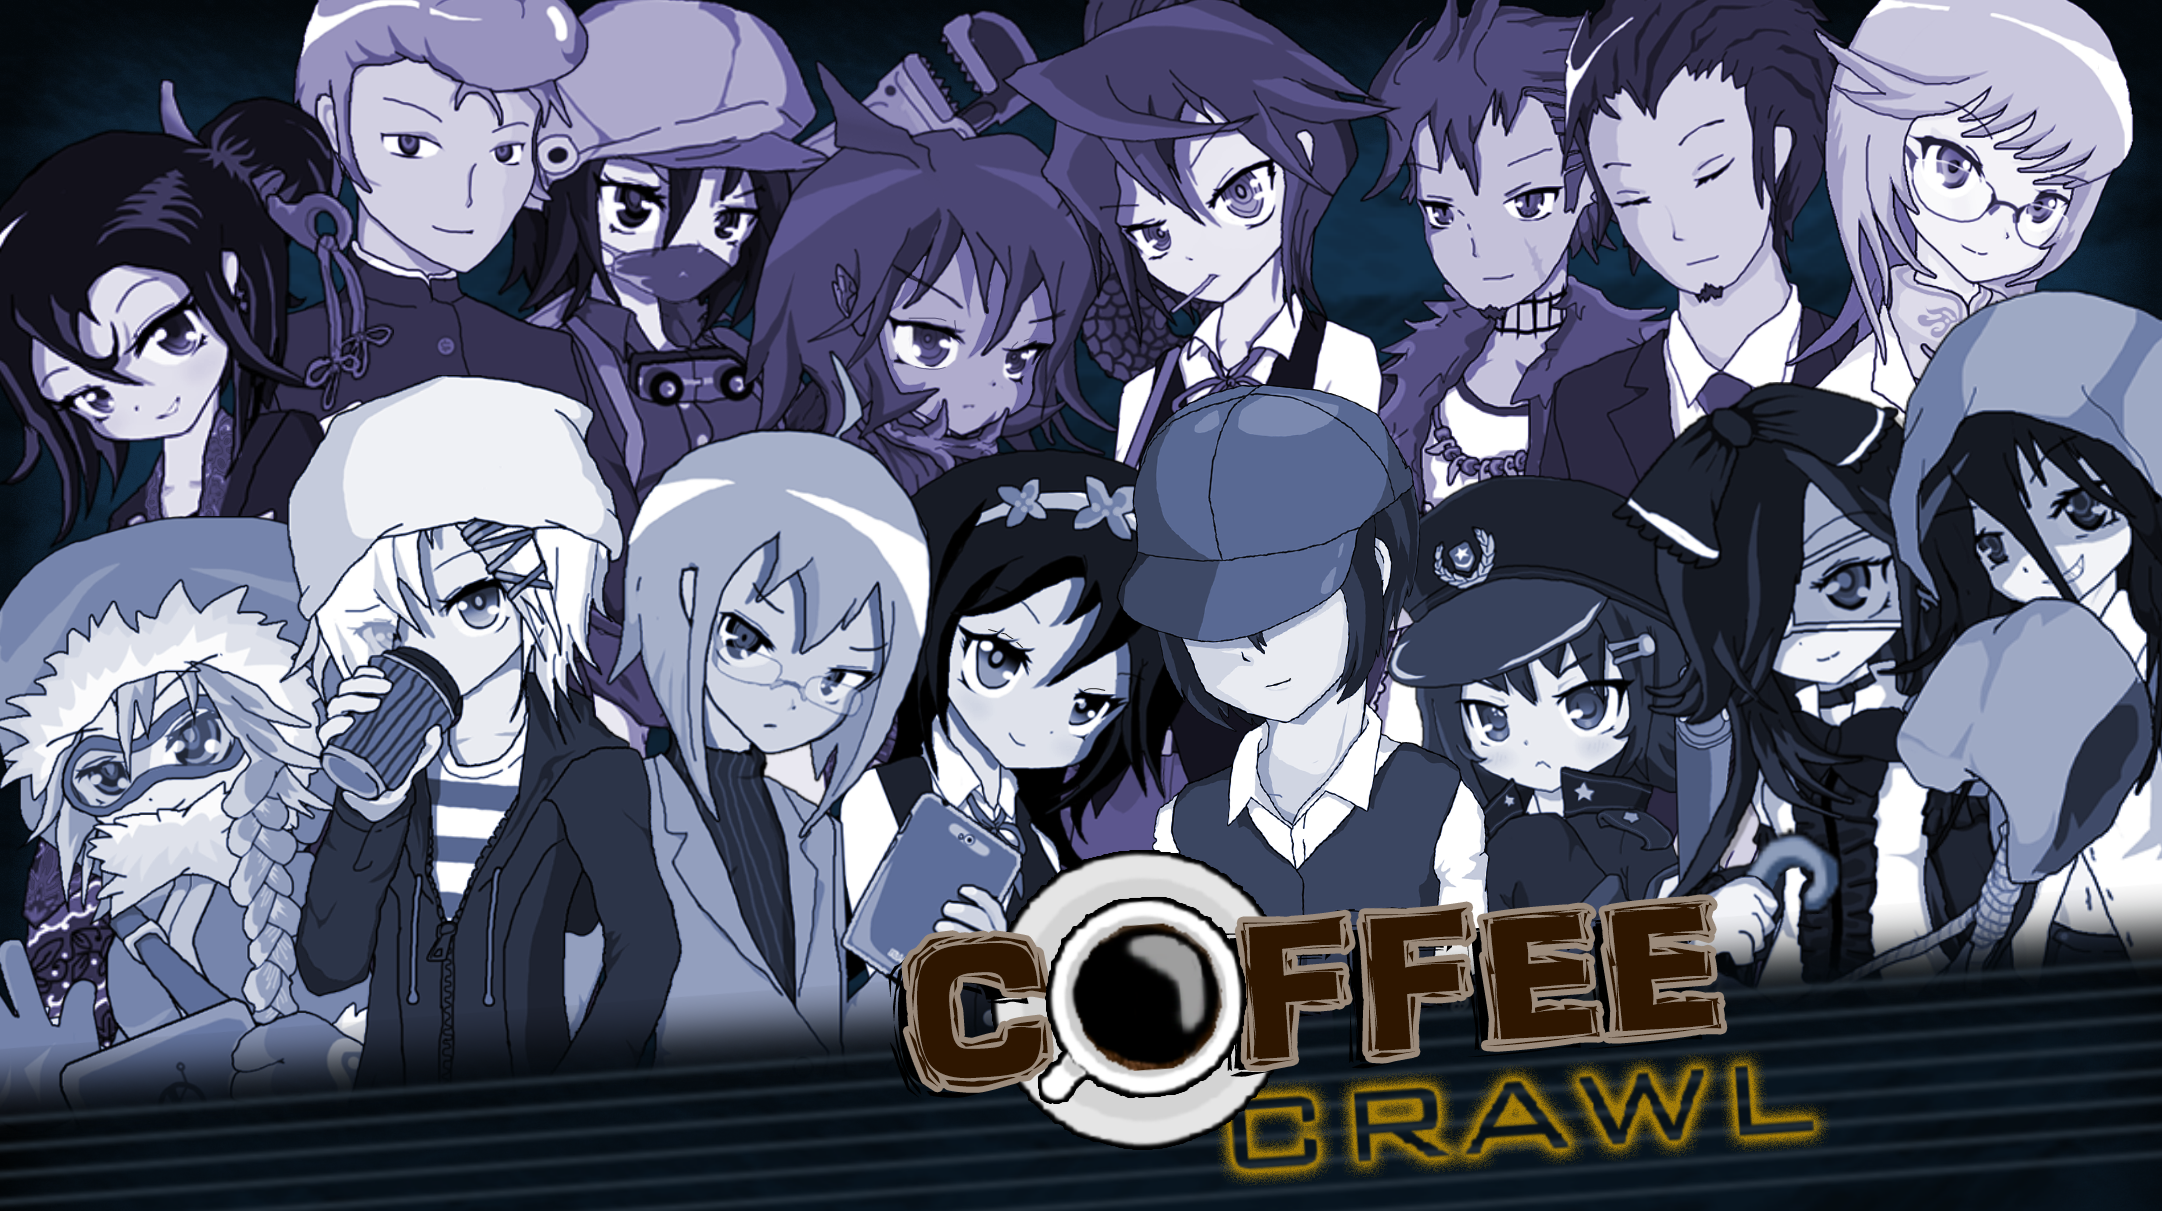 Coffee Crawl